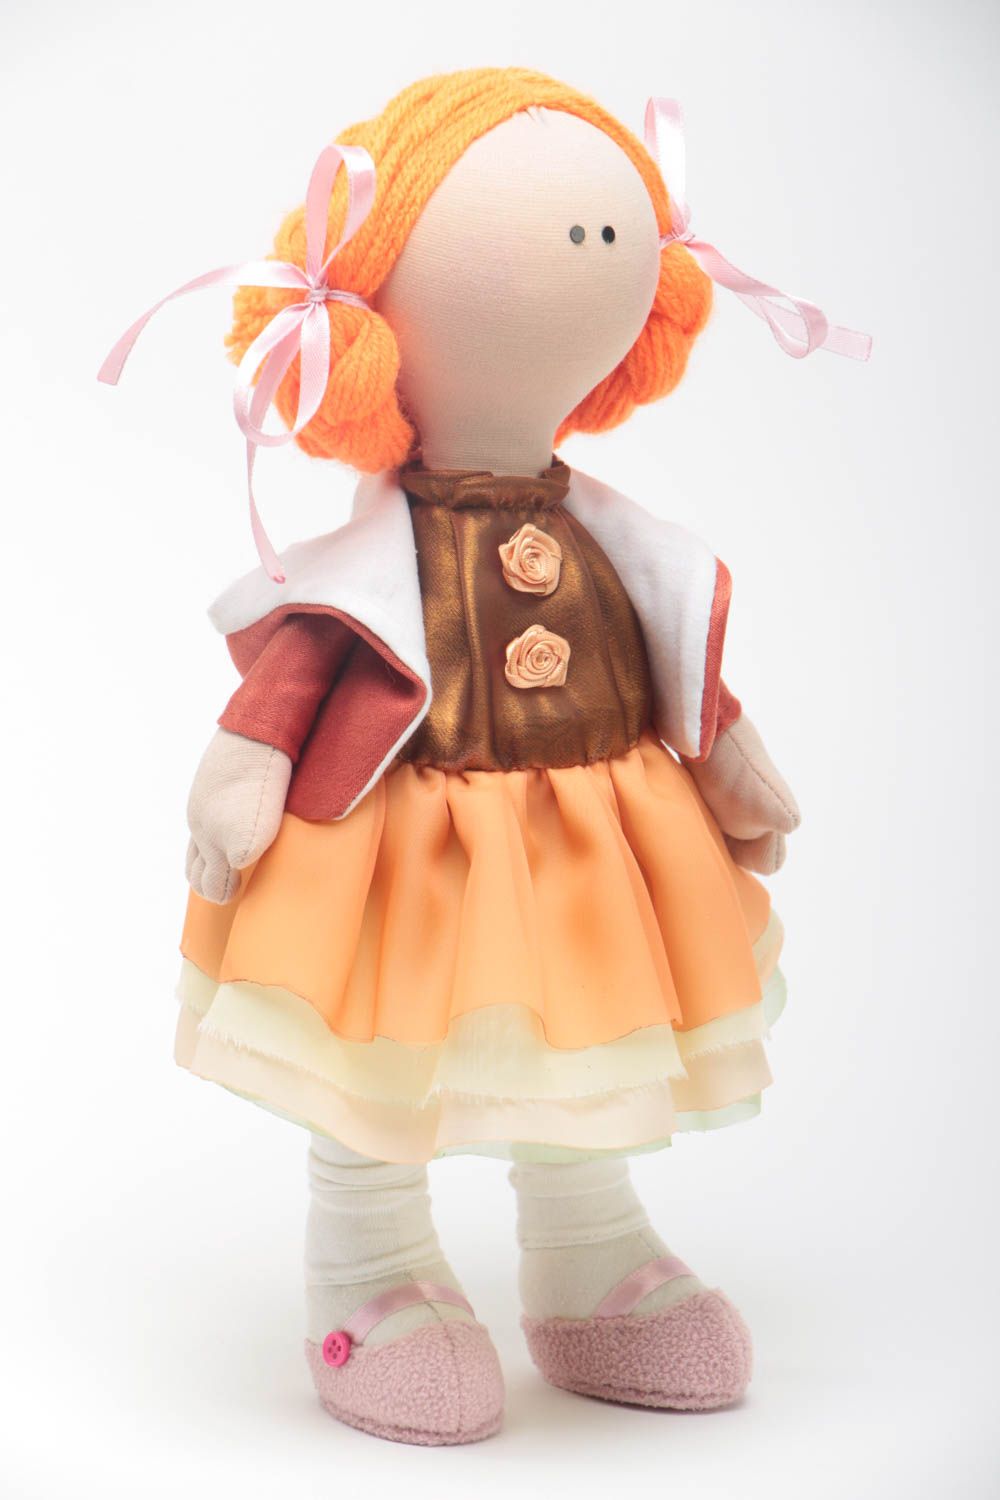 Handmade Designer Puppe in orange Kleidung Stoff Spielzeug schöne Puppe foto 2